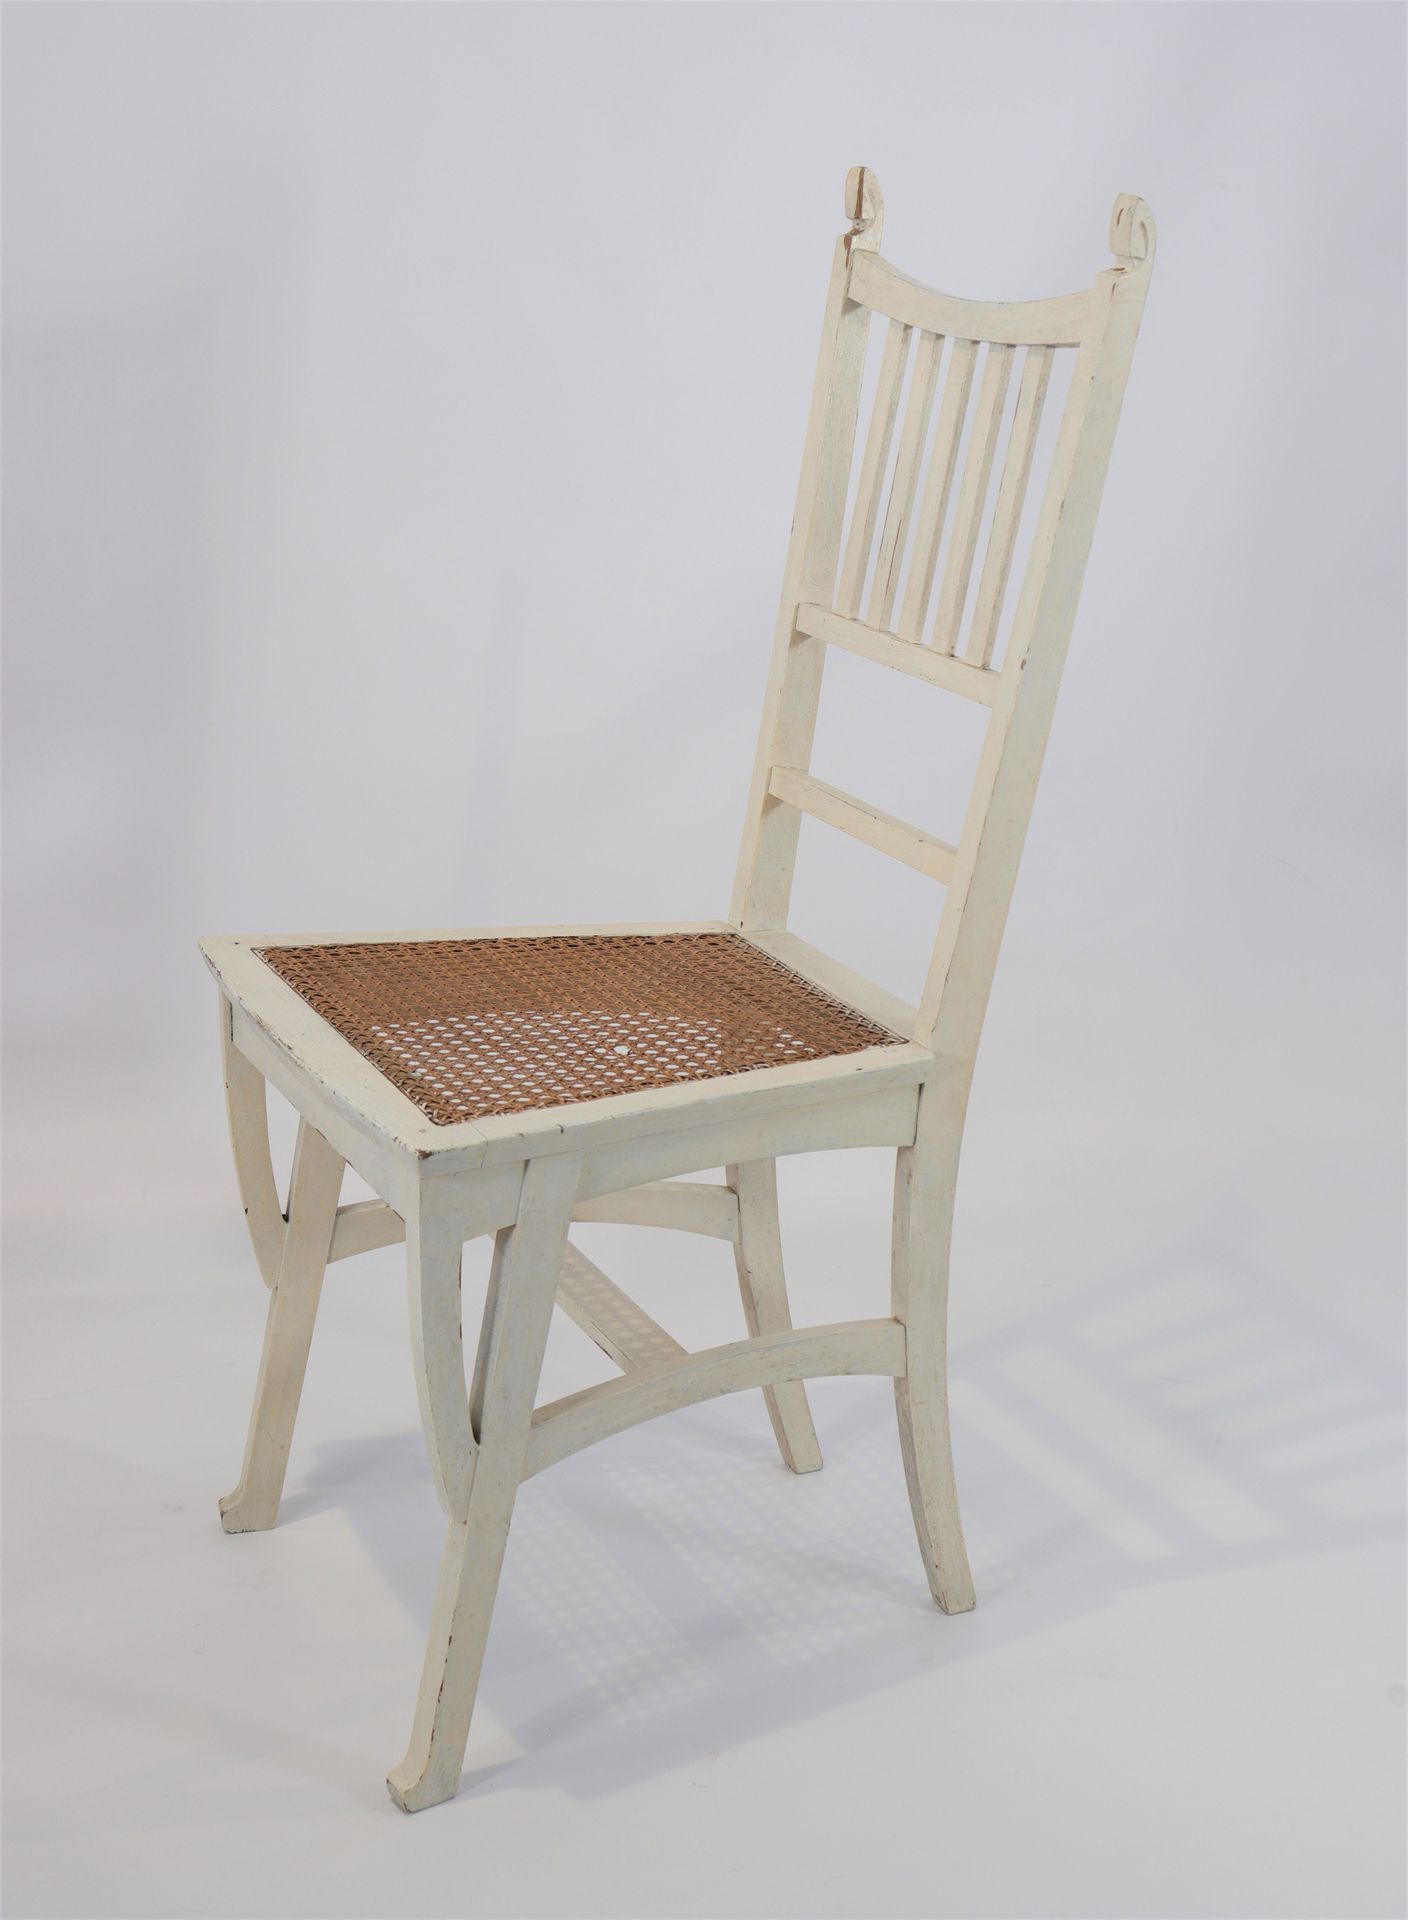 Belgique - Chaise Gustav Serurrier - 1900 比利时 - Gustav Serurrier椅子 - 1900
时期: 第十&hellip;